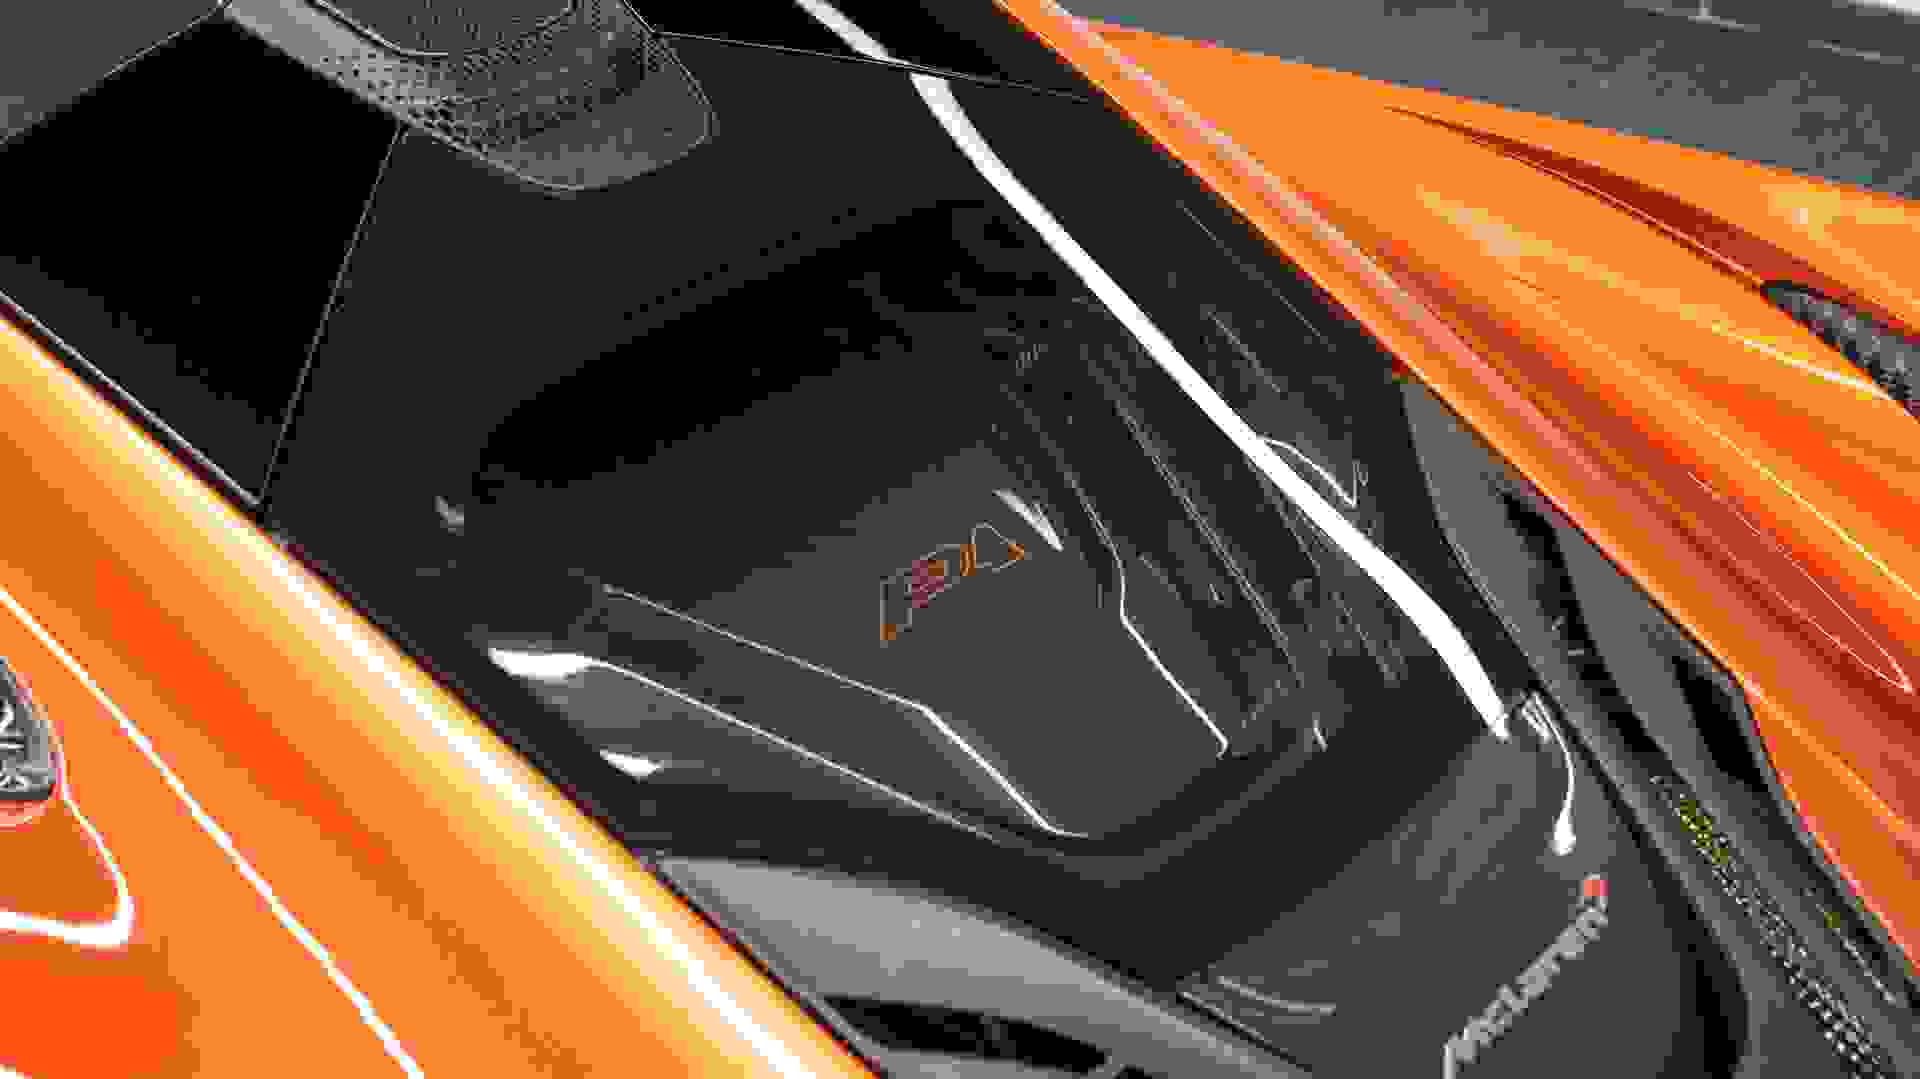 McLaren P1 Photo 5aab28e8-e42b-43a3-aedd-c15c5520907a.jpg